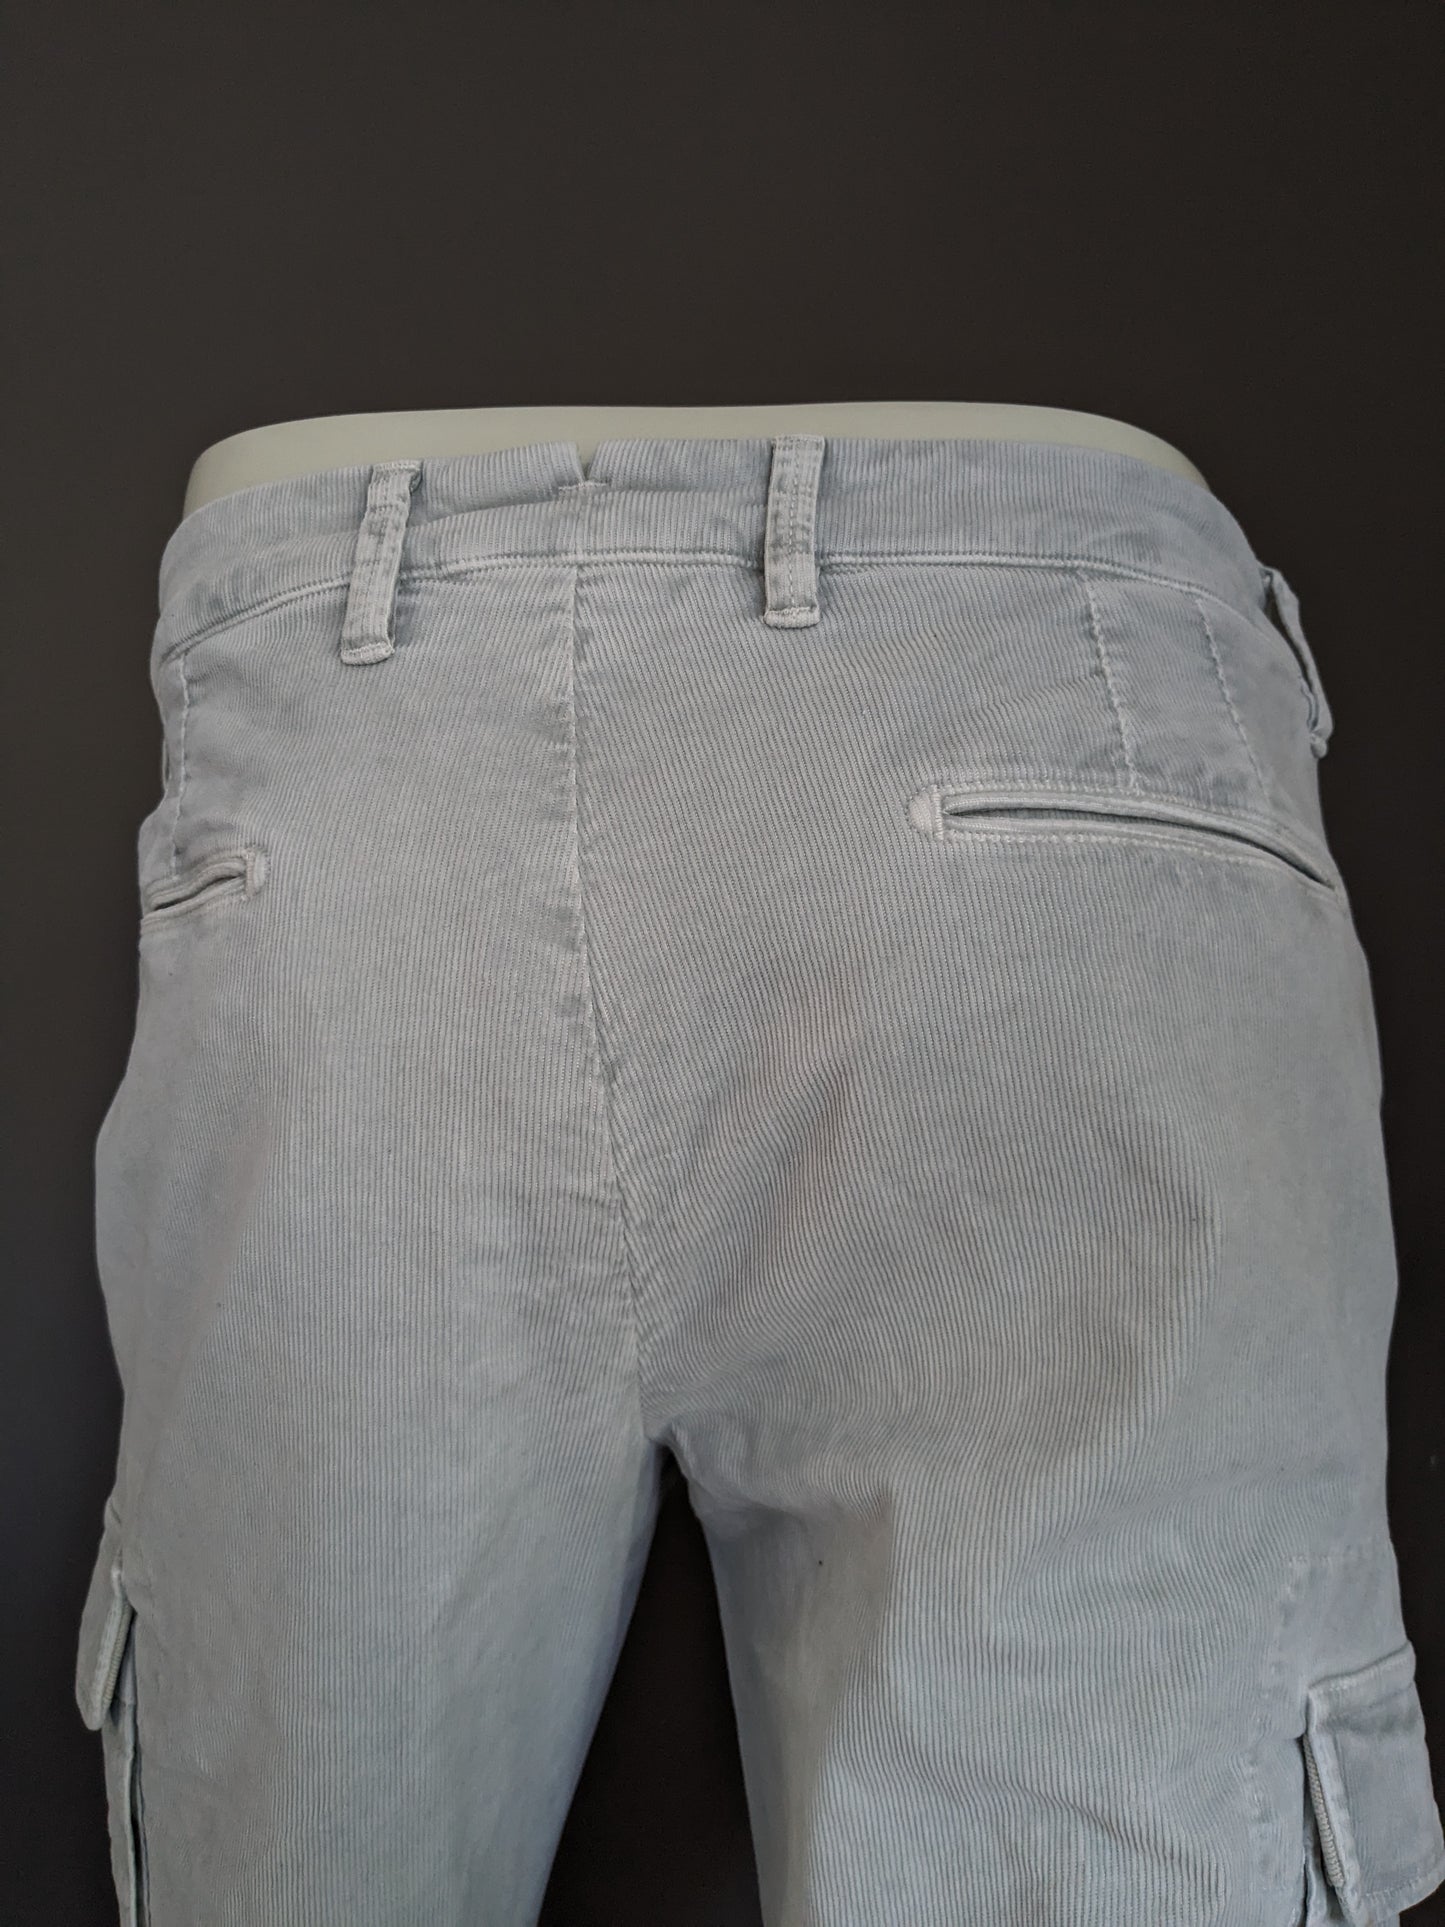 Pantaloni cargo Artu Napoli in costina. Colore grigio chiaro. Taglia W31 - L30. Stirata.